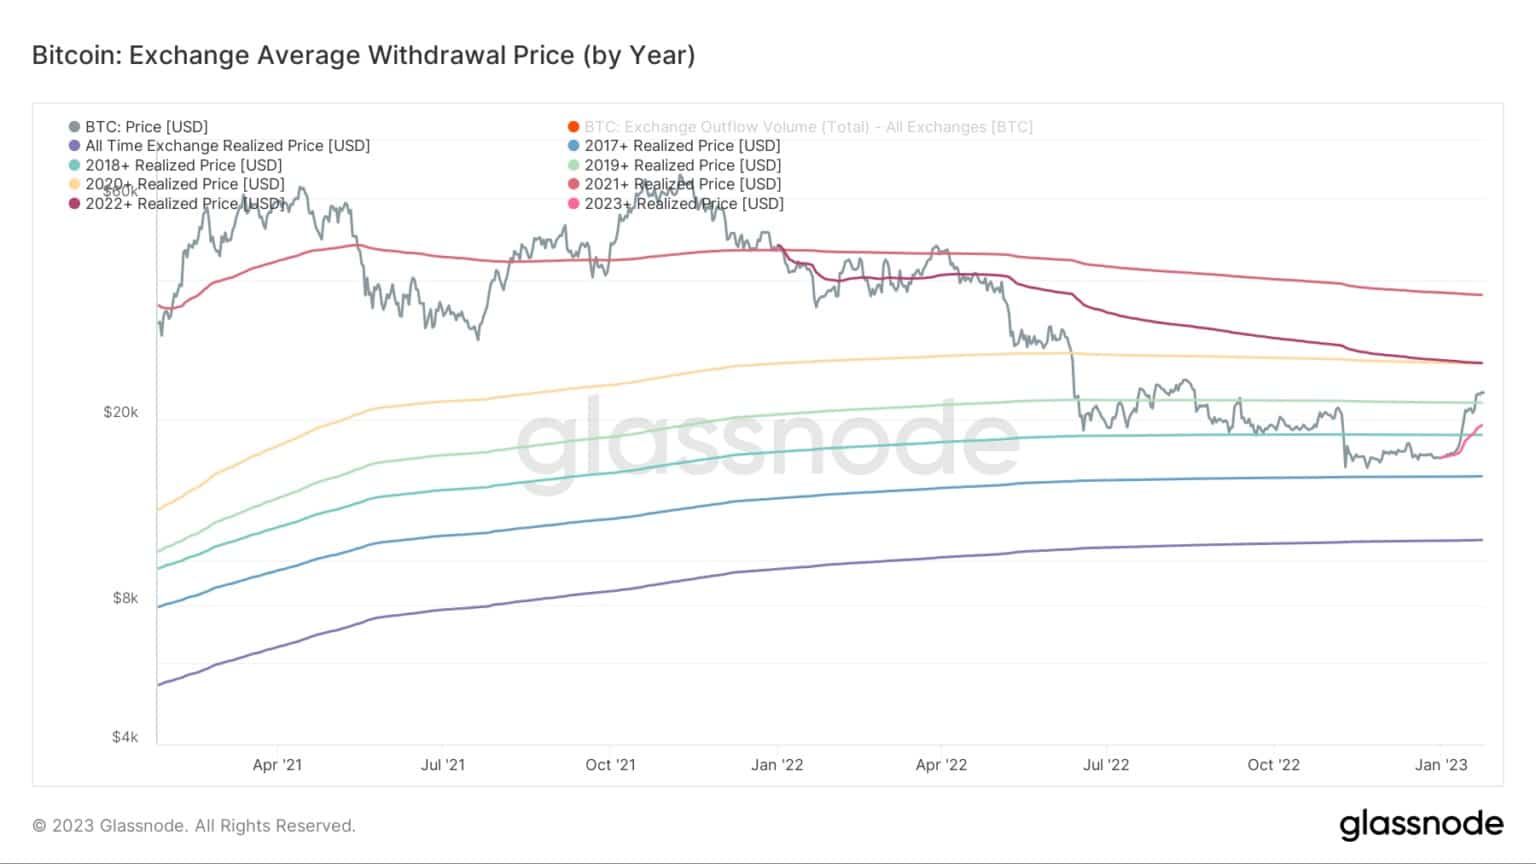 Graphique montrant le prix moyen de retrait de Bitcoin par année (Source : Glassnode)